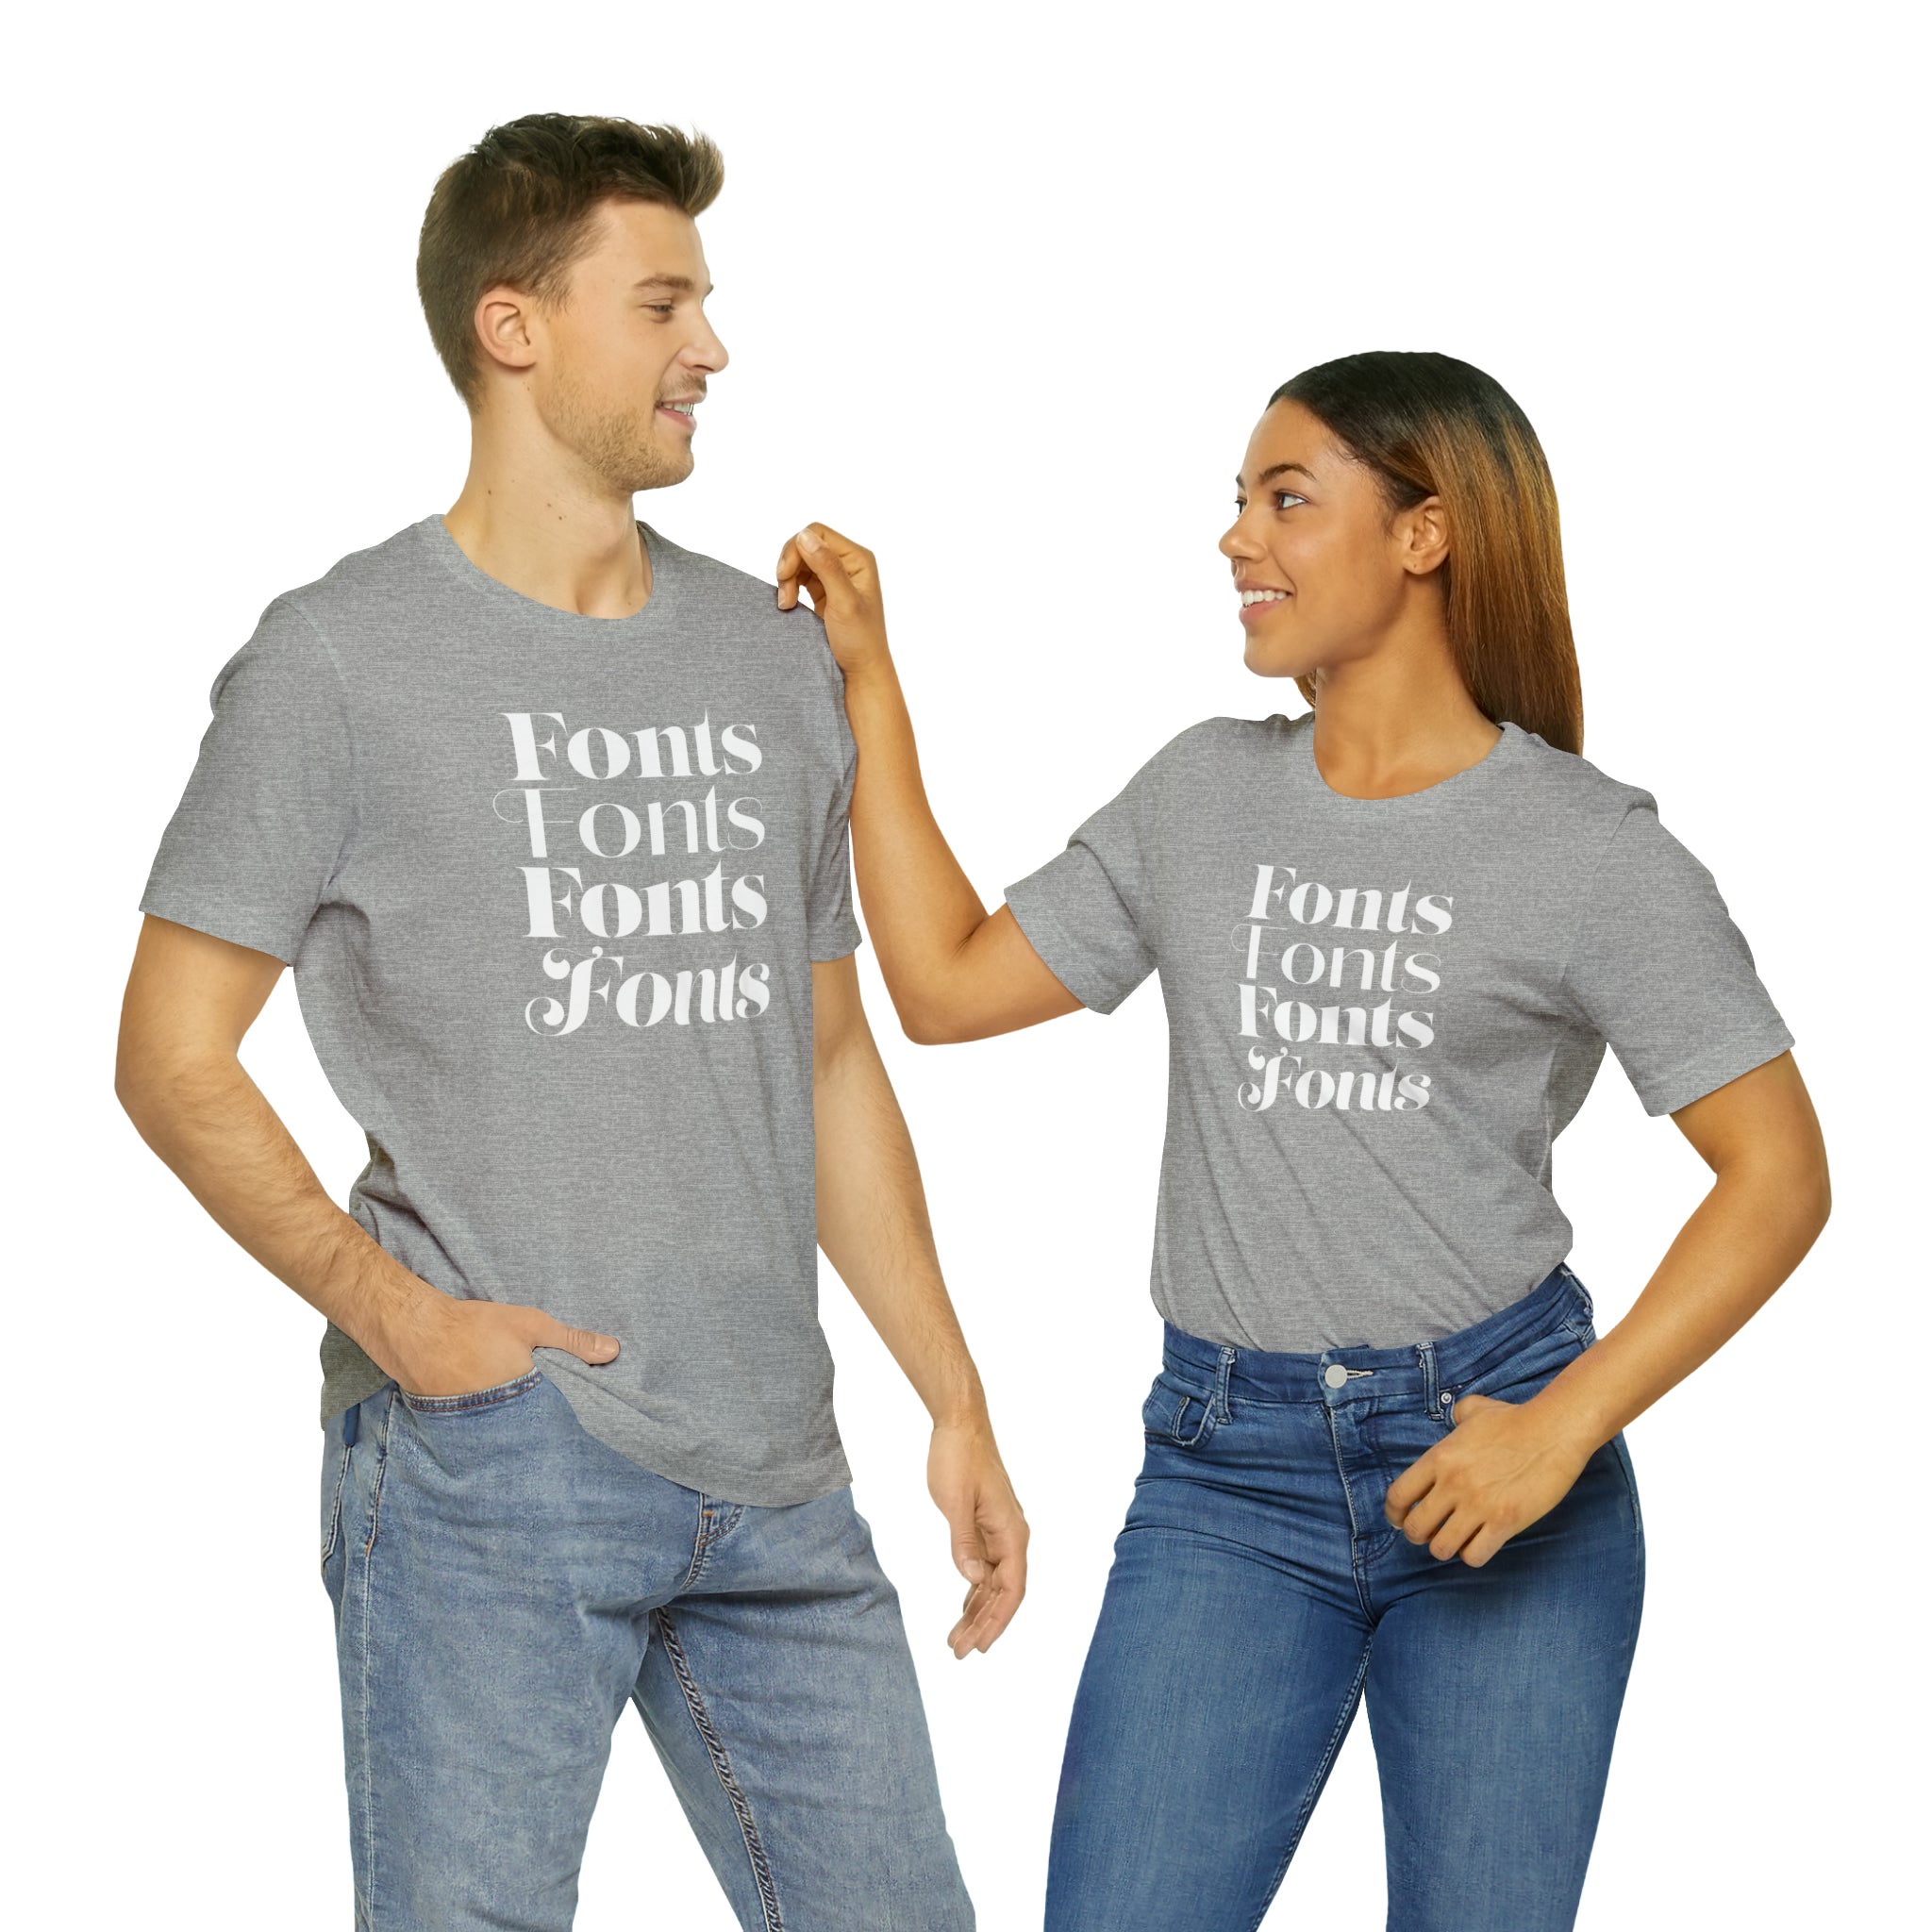 Lust Fonts T-shirt